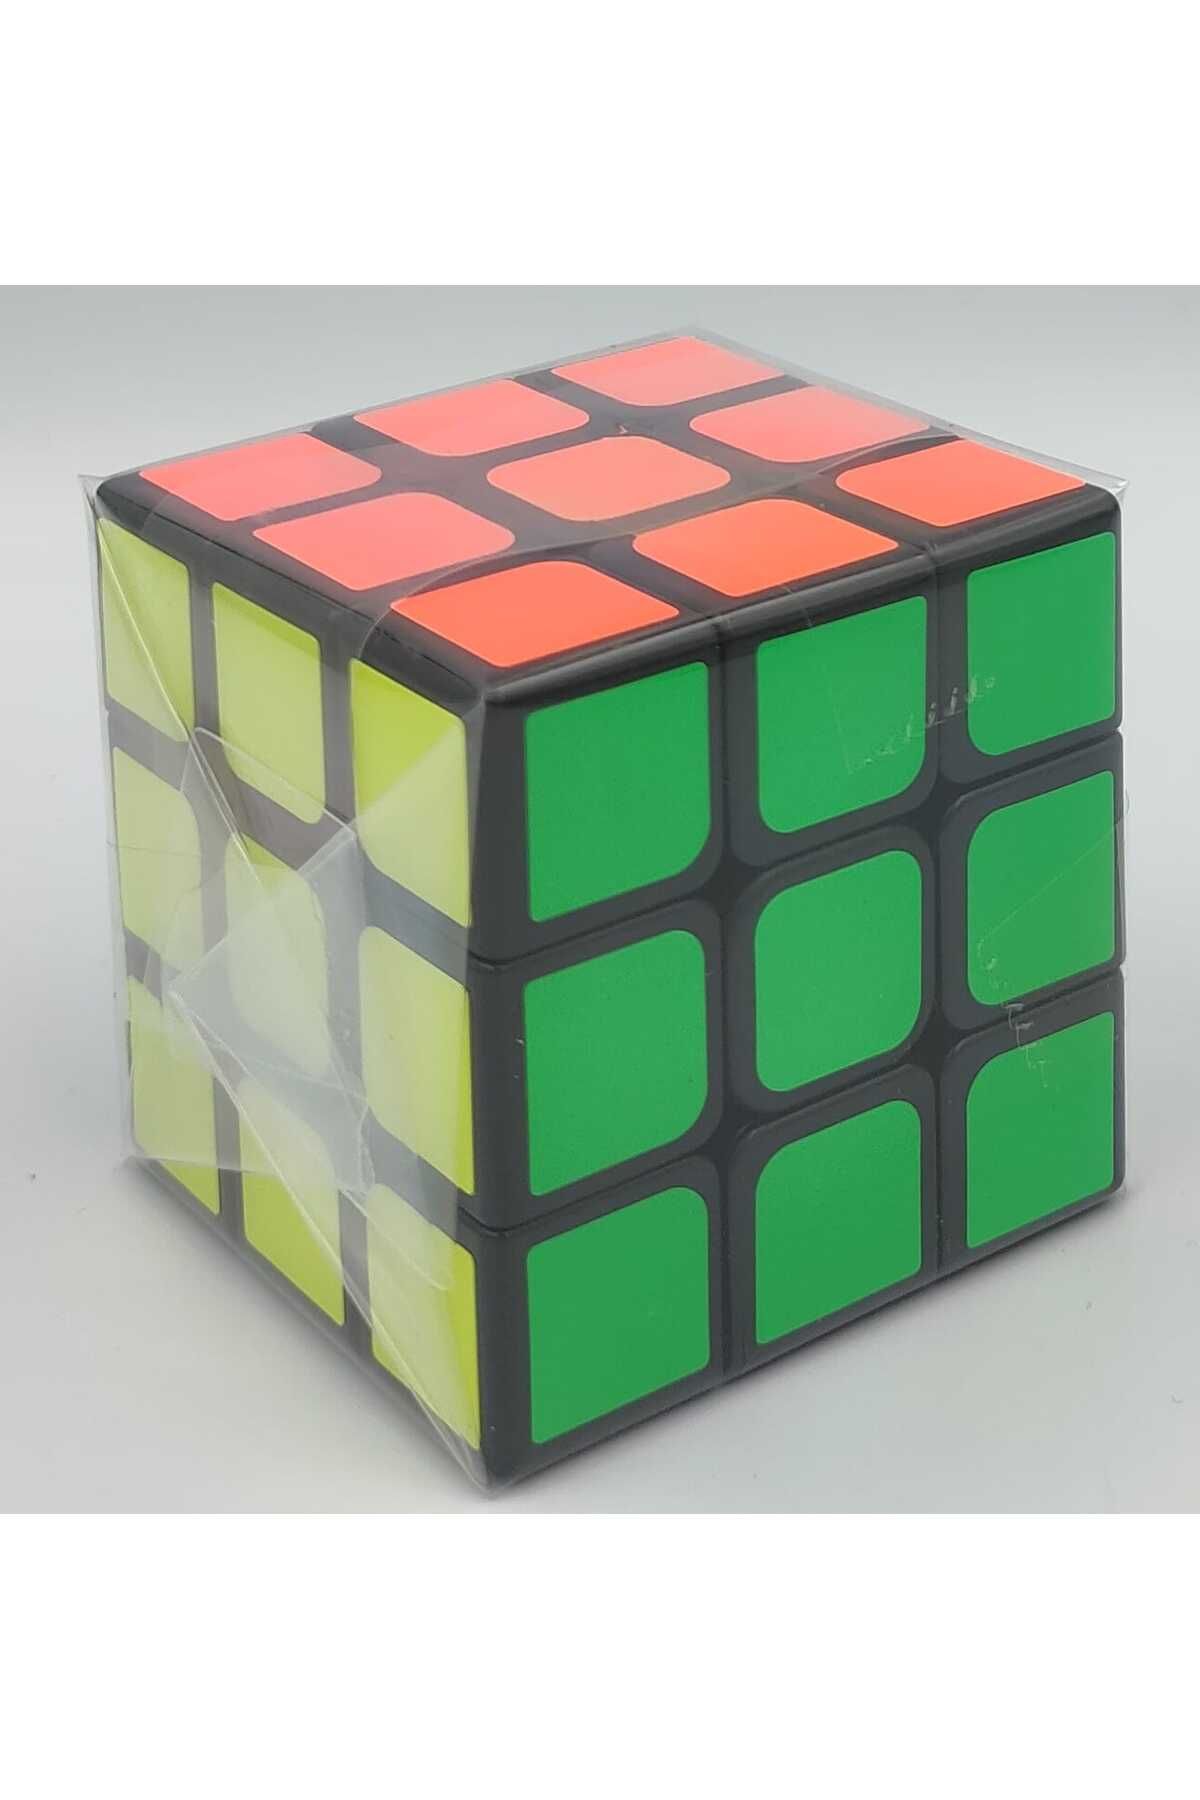 Vardem Klasik Magic Cube Zeka Küpü 3x3